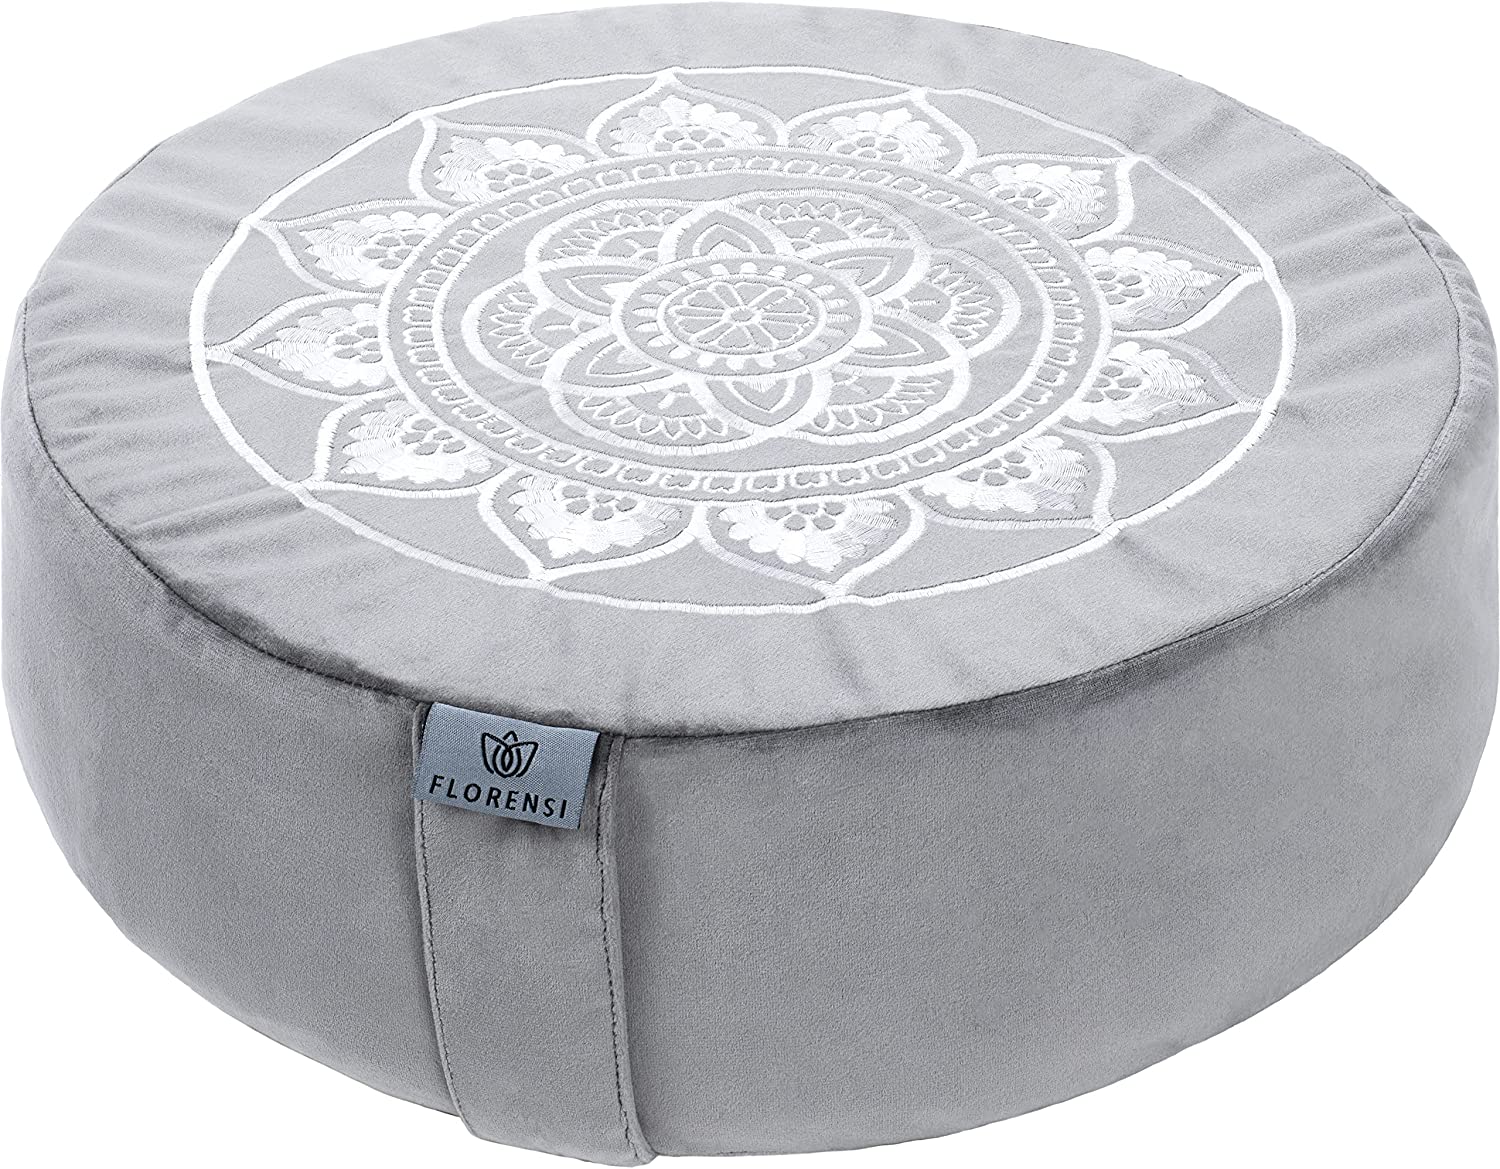 Florensi meditation cushion